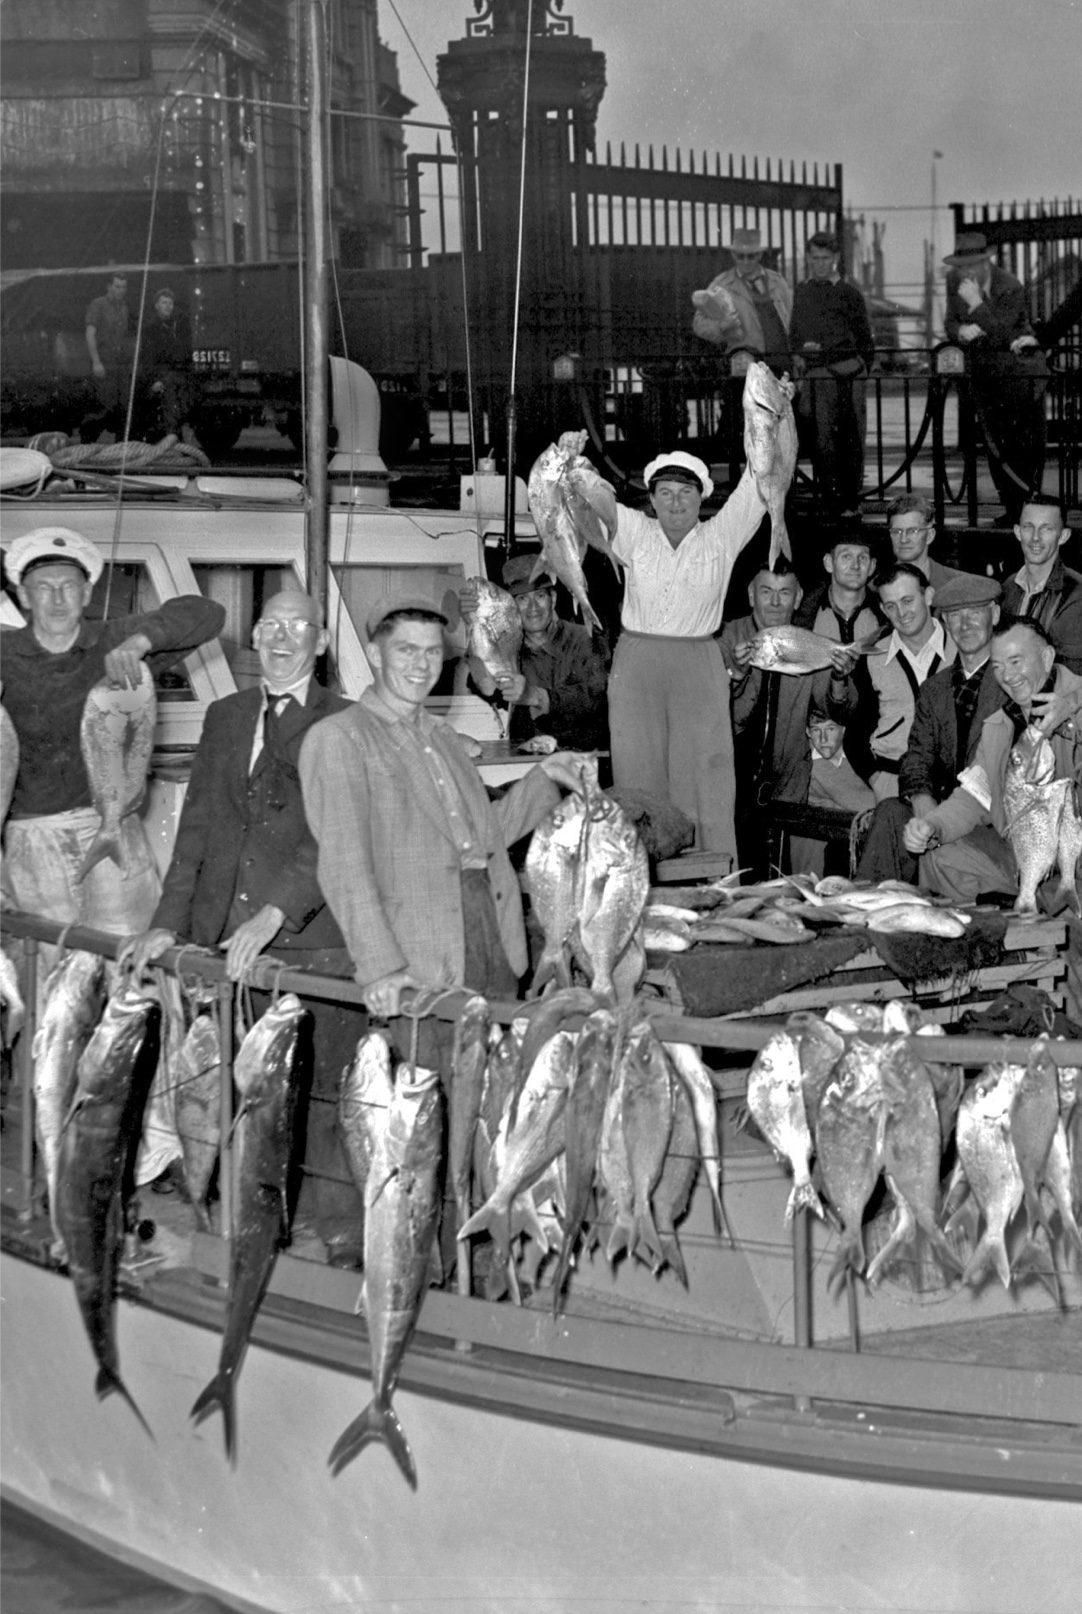 Fishers return triumphant 1950s